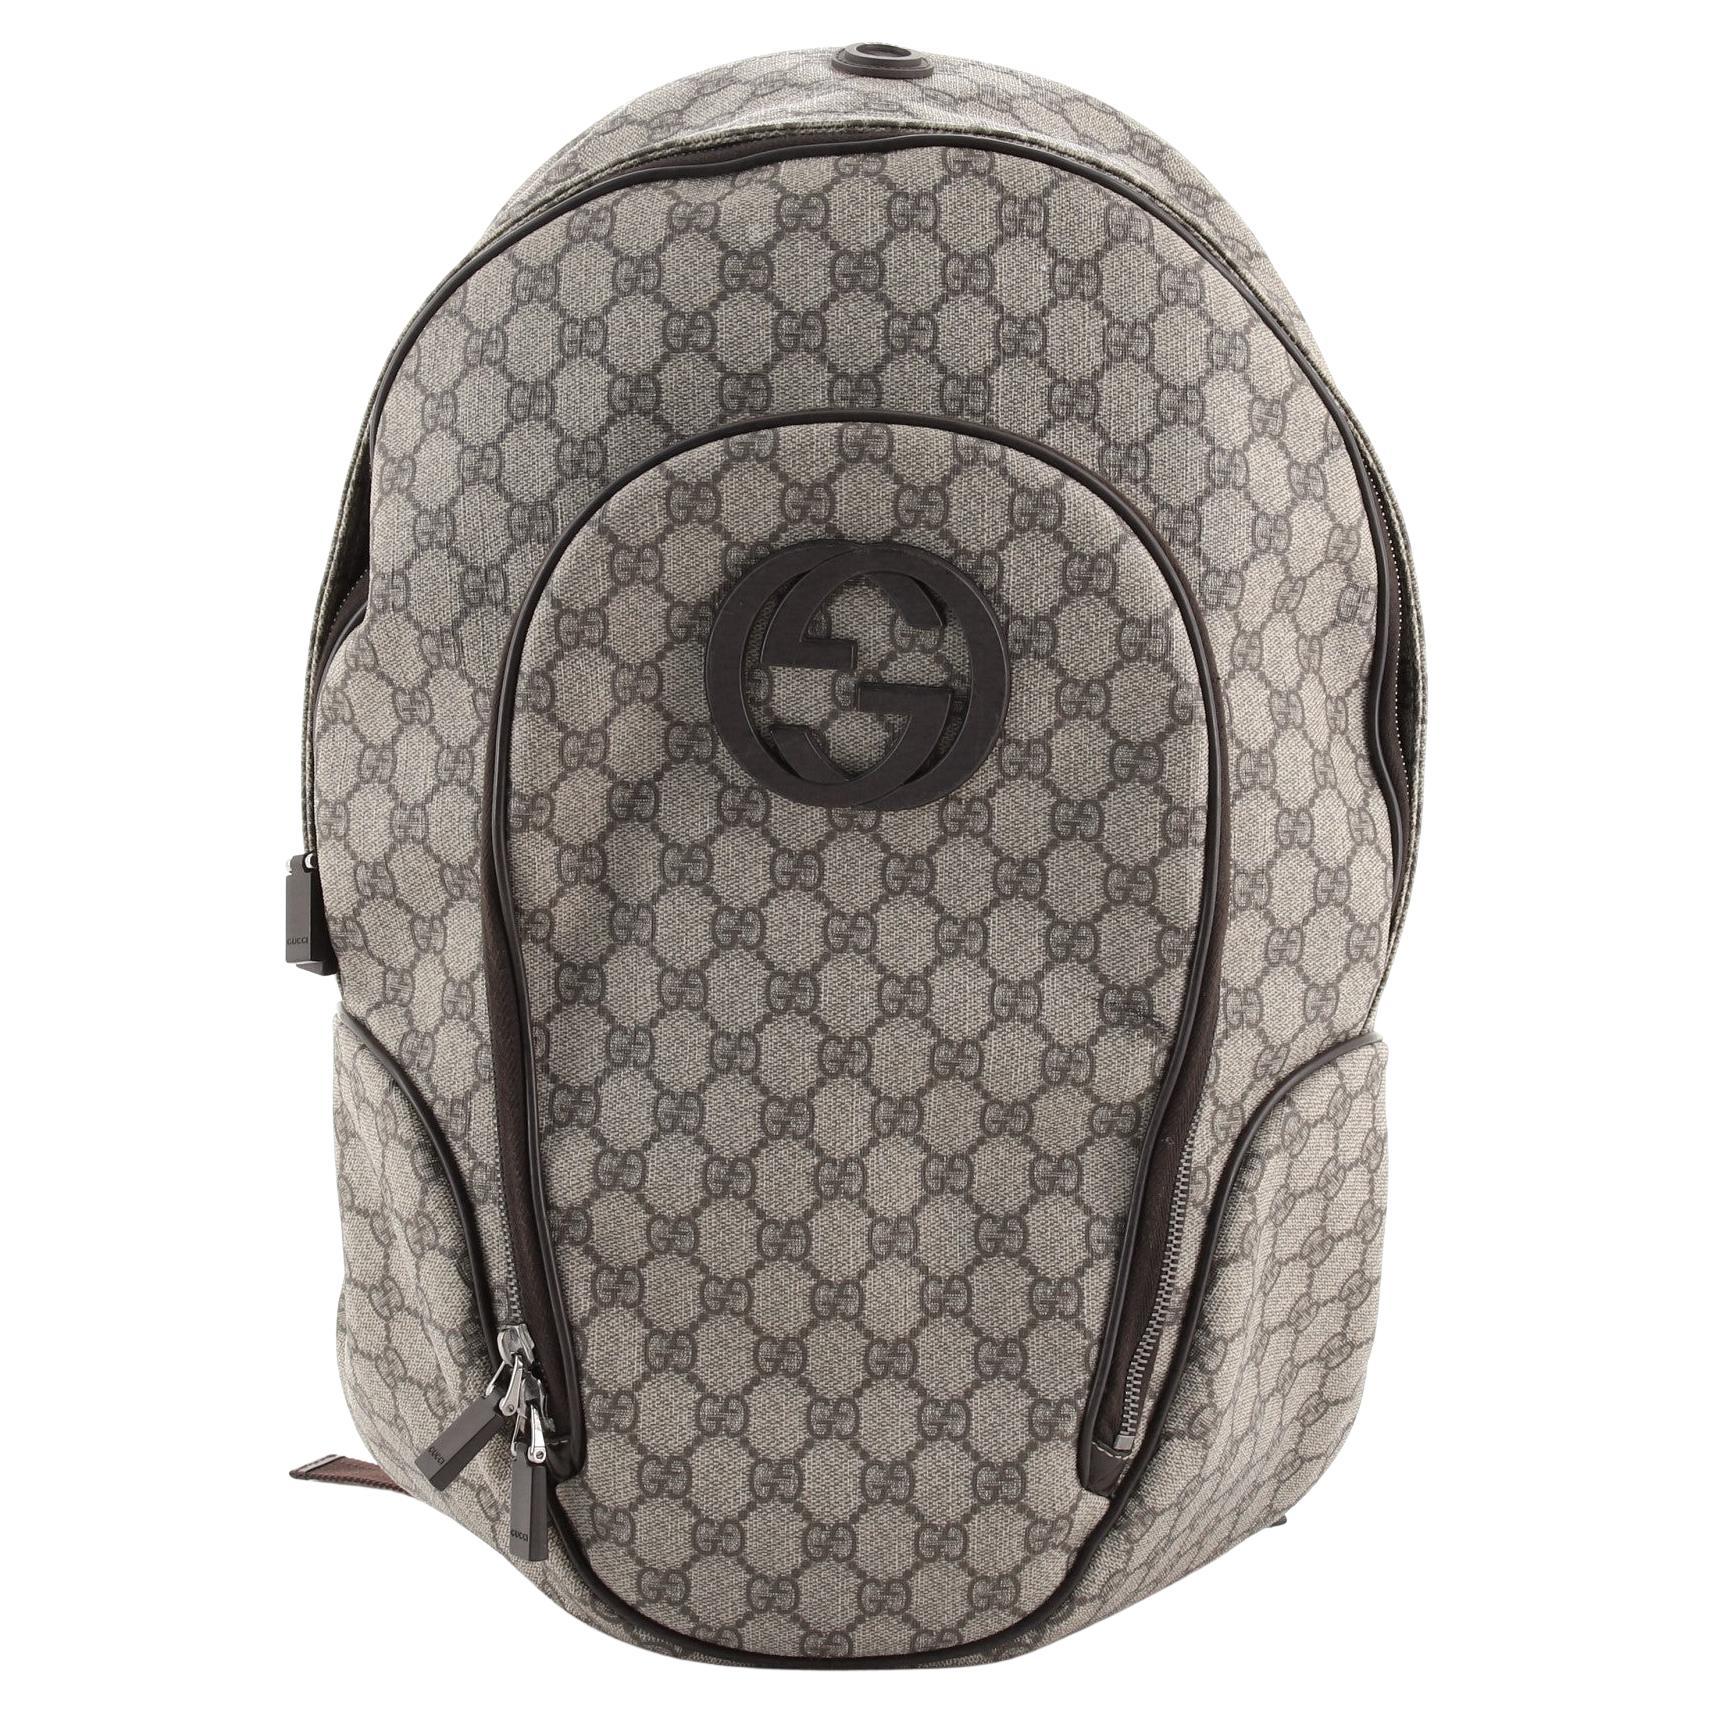 Preloved Gucci Men's GG Coated Canvas Interlocking G Messenger Bag